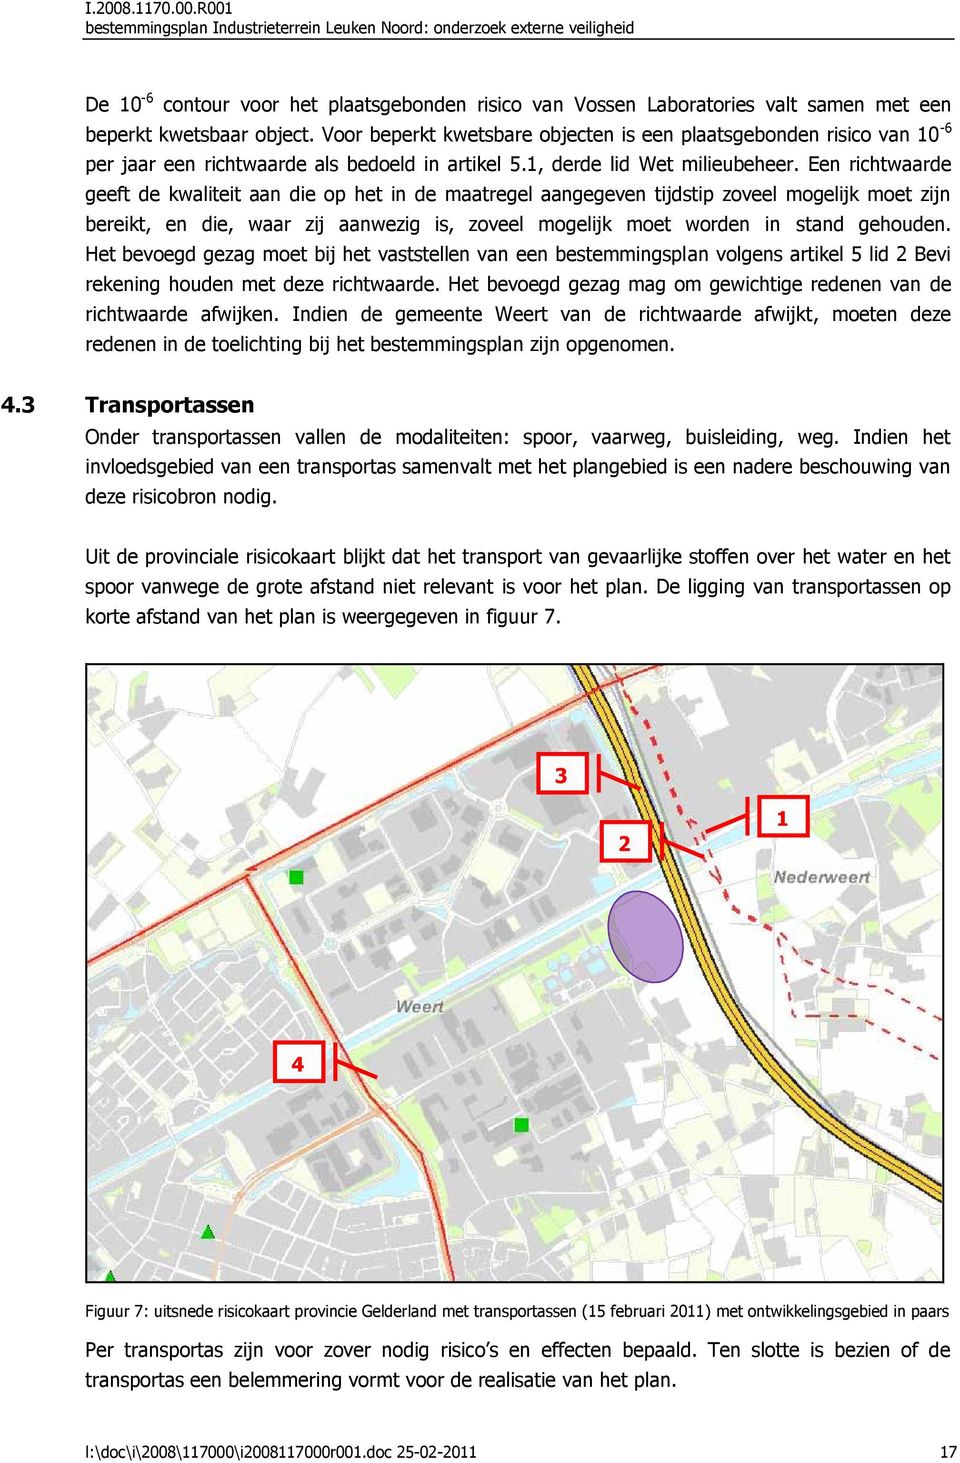 R001 bestemmingsplan Industrieterrein Leuken Noord: onderzoek externe veiligheid De 10-6 contour voor het plaatsgebonden risico van Vossen Laboratories valt samen met een beperkt kwetsbaar object.